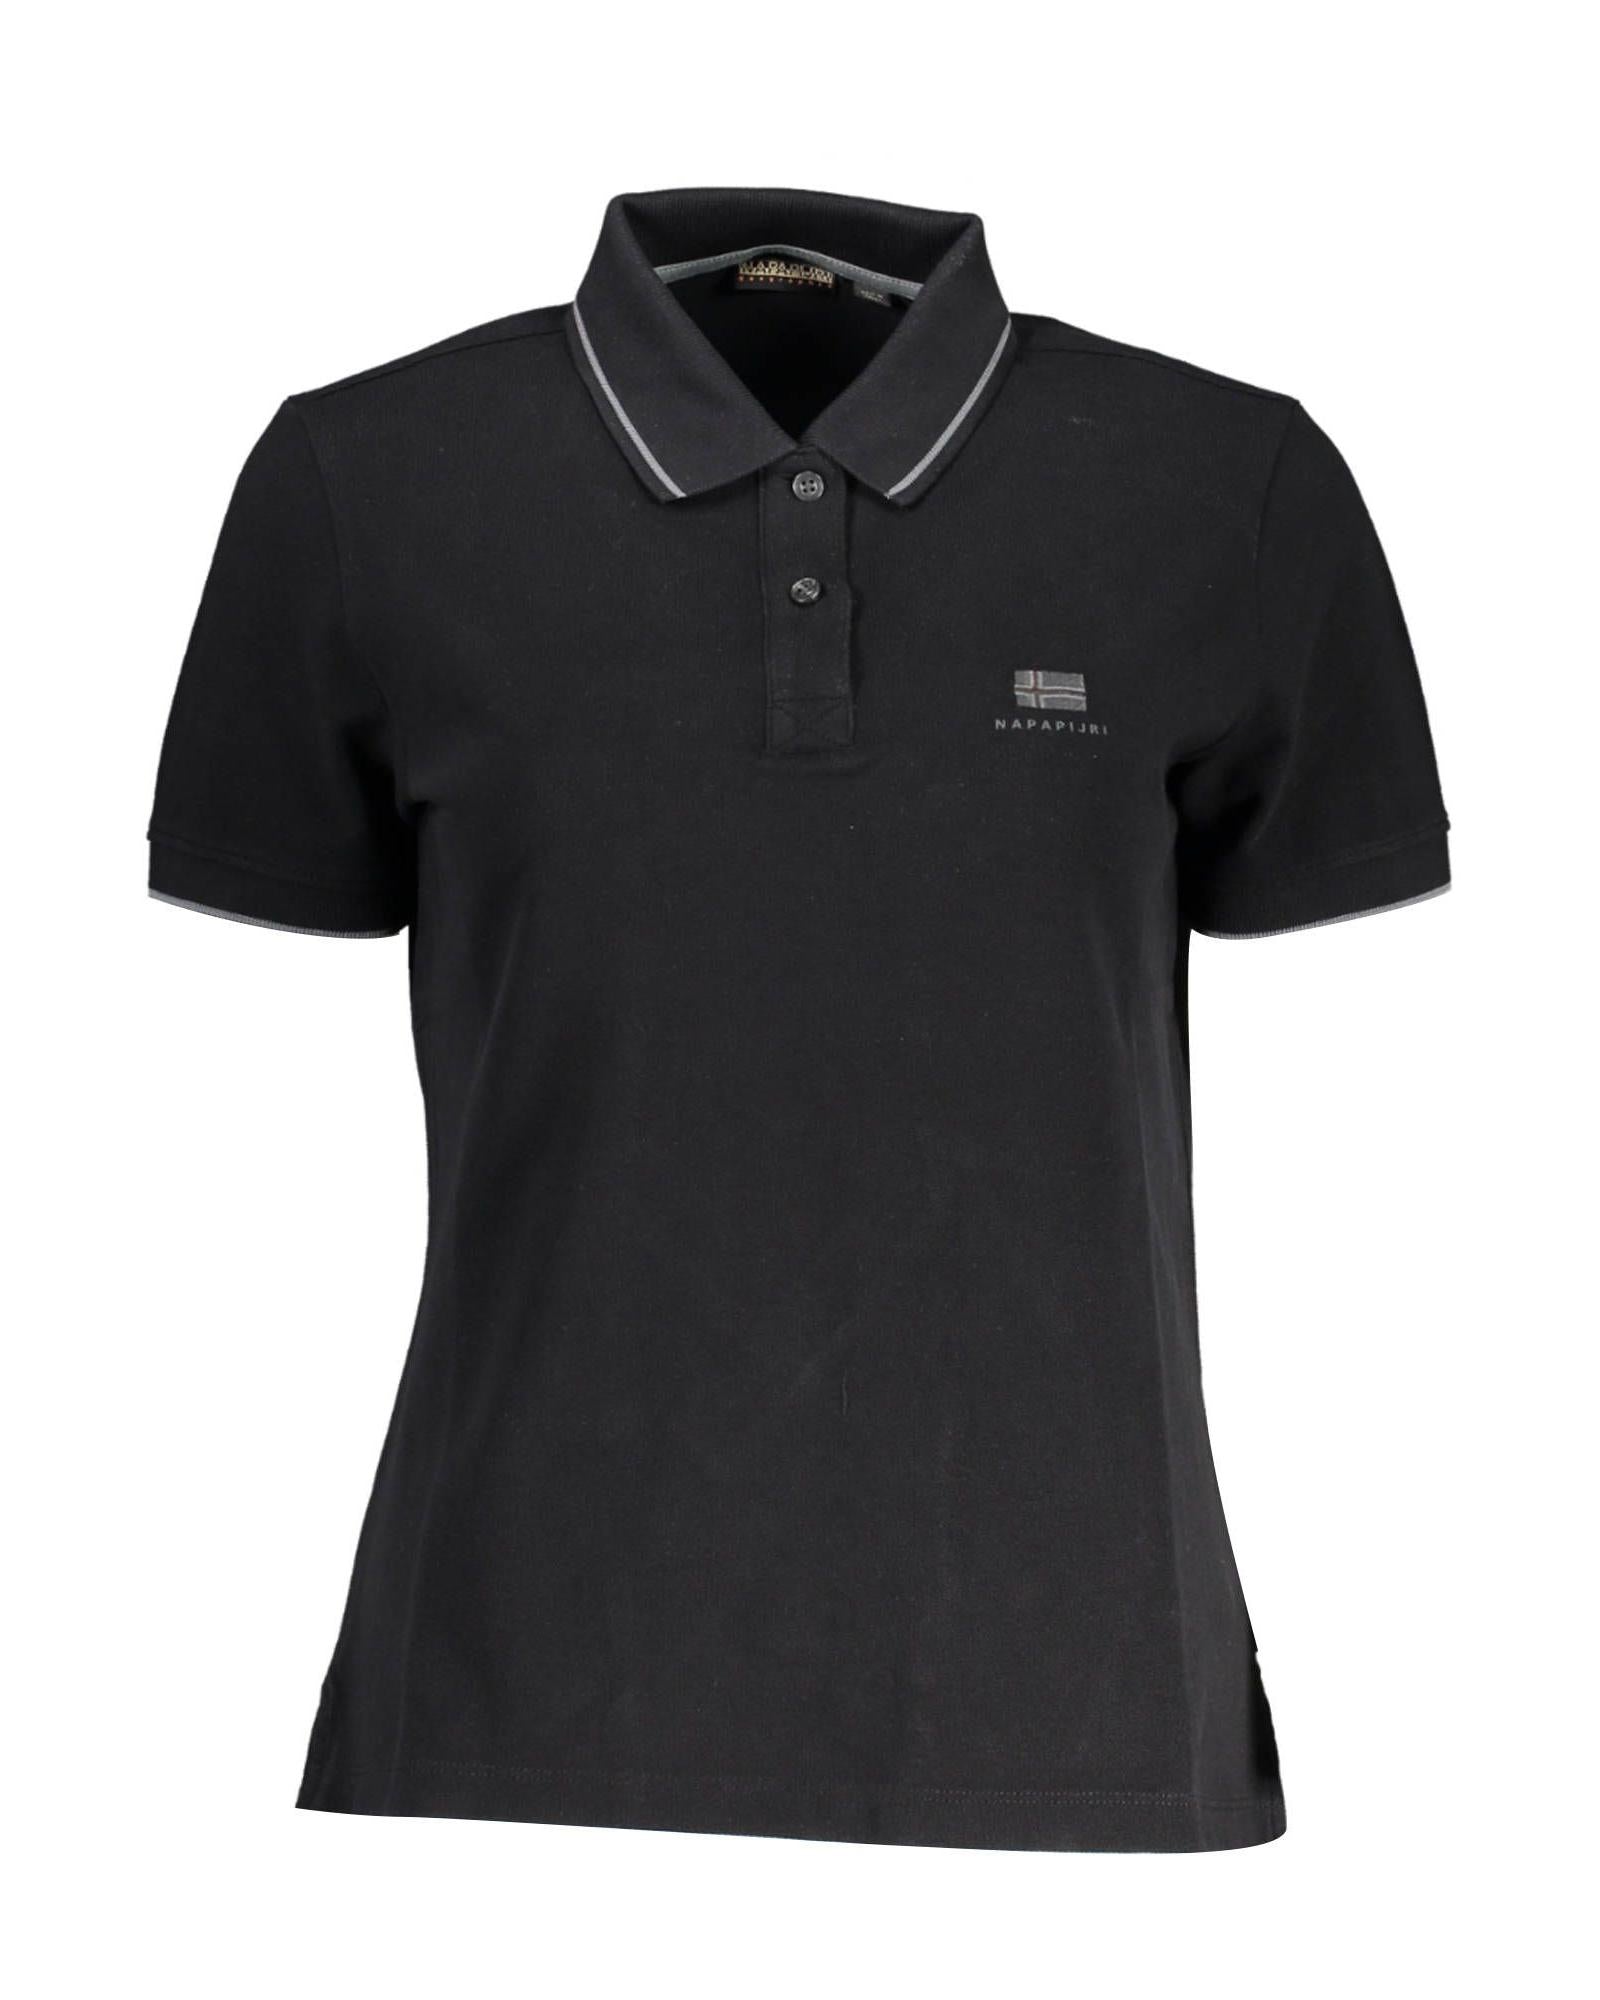 Men's Black Cotton Polo Shirt - M